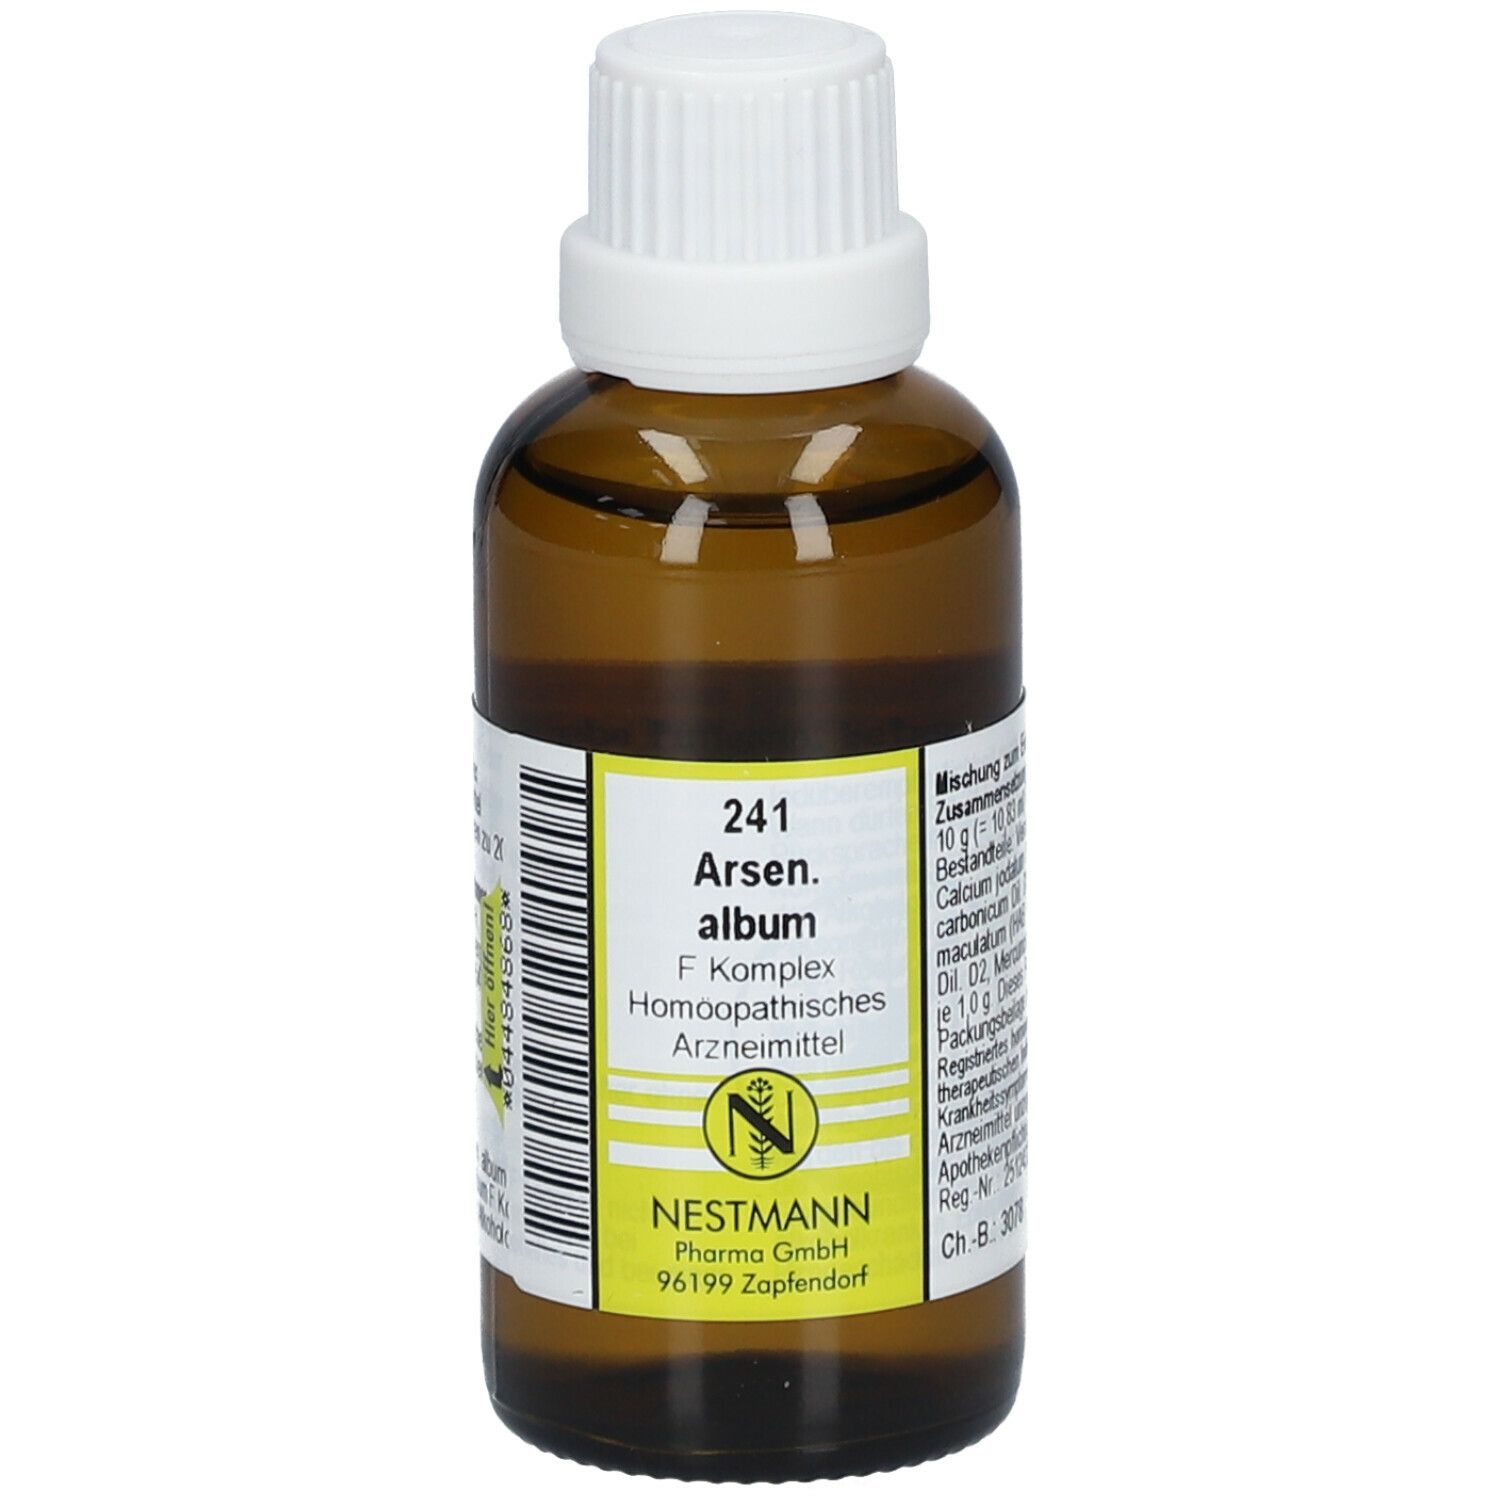 Arsenicum album (Metallum album) Archives - Powers of Homeopathy